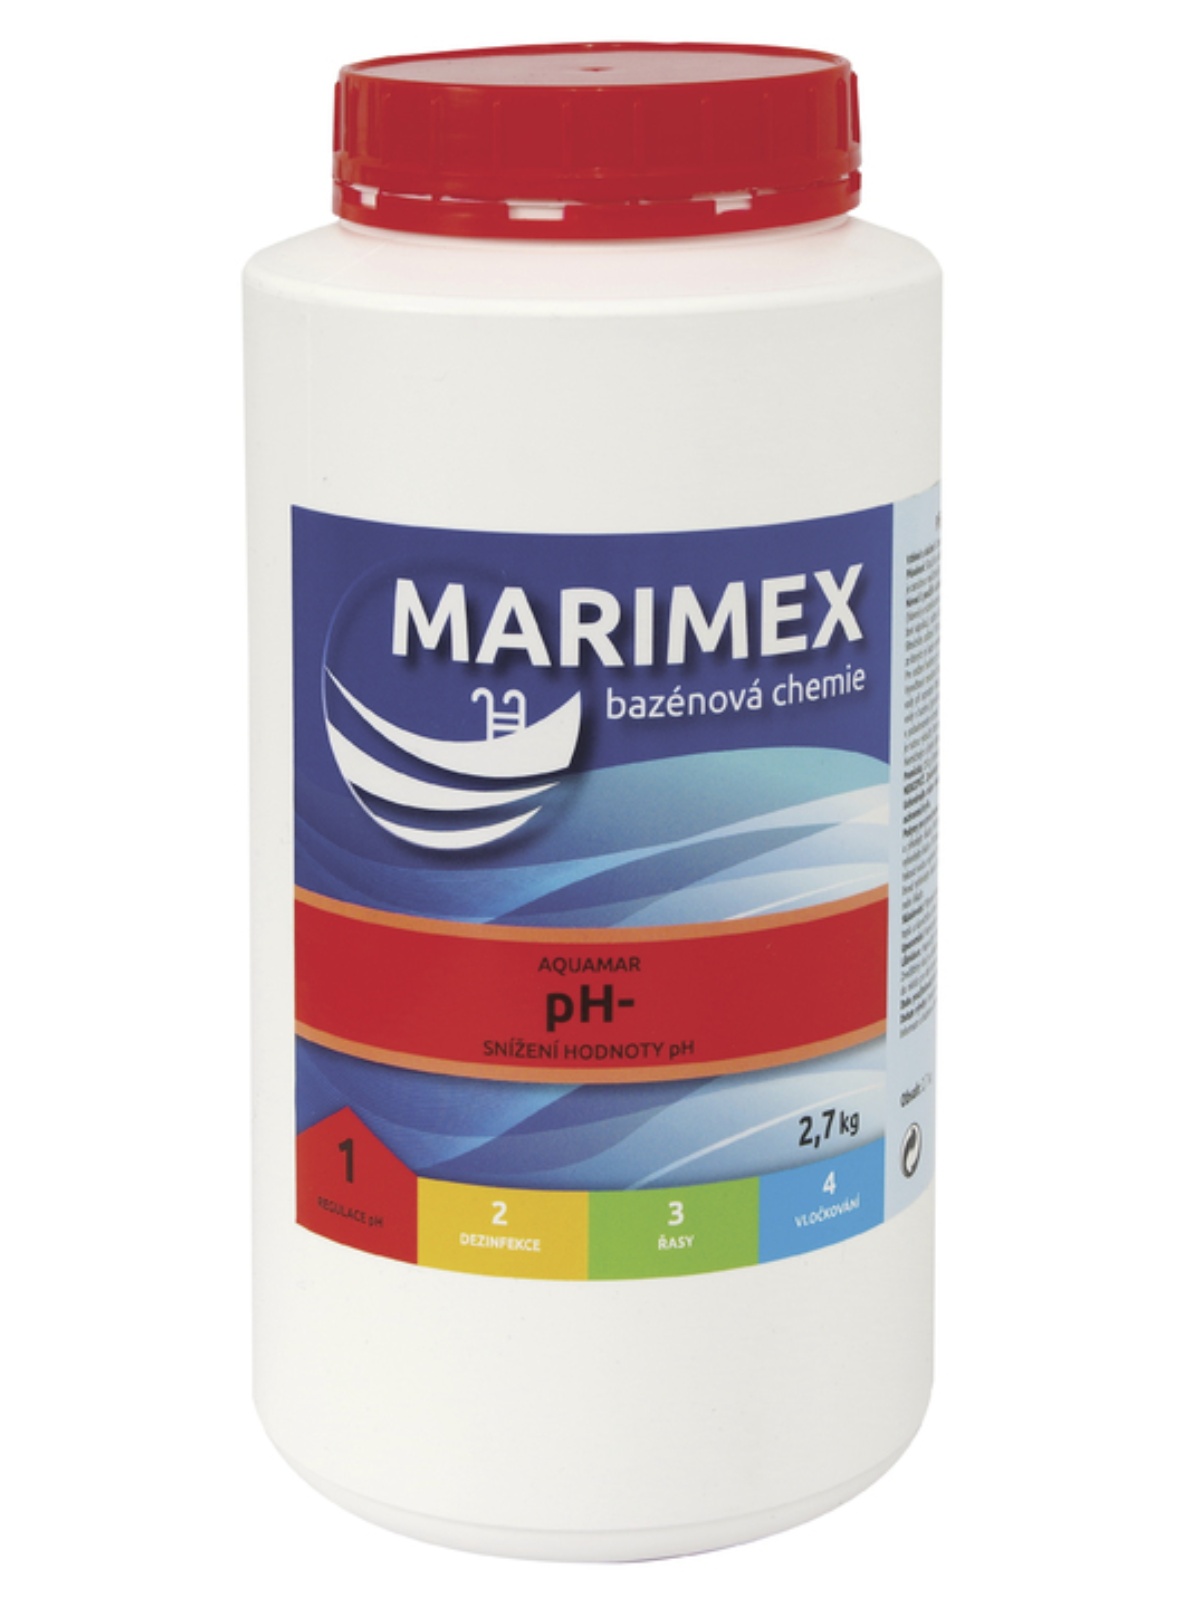 MARIMEX 11300107 Aquamar pH- 2,7 kg